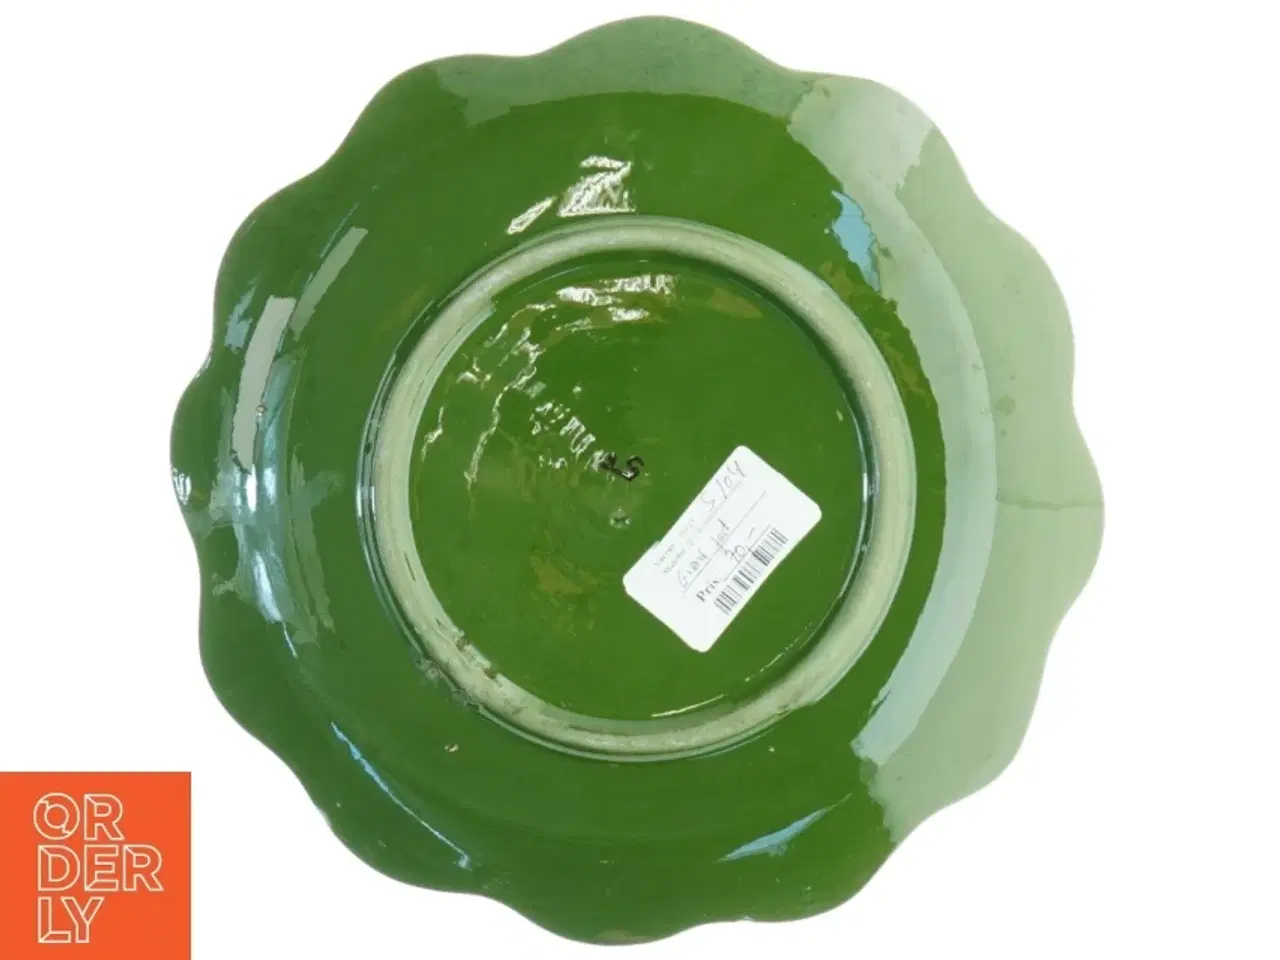 Billede 3 - Grøn keramik fad med dekorative malede motiver (str. O 29 cm)